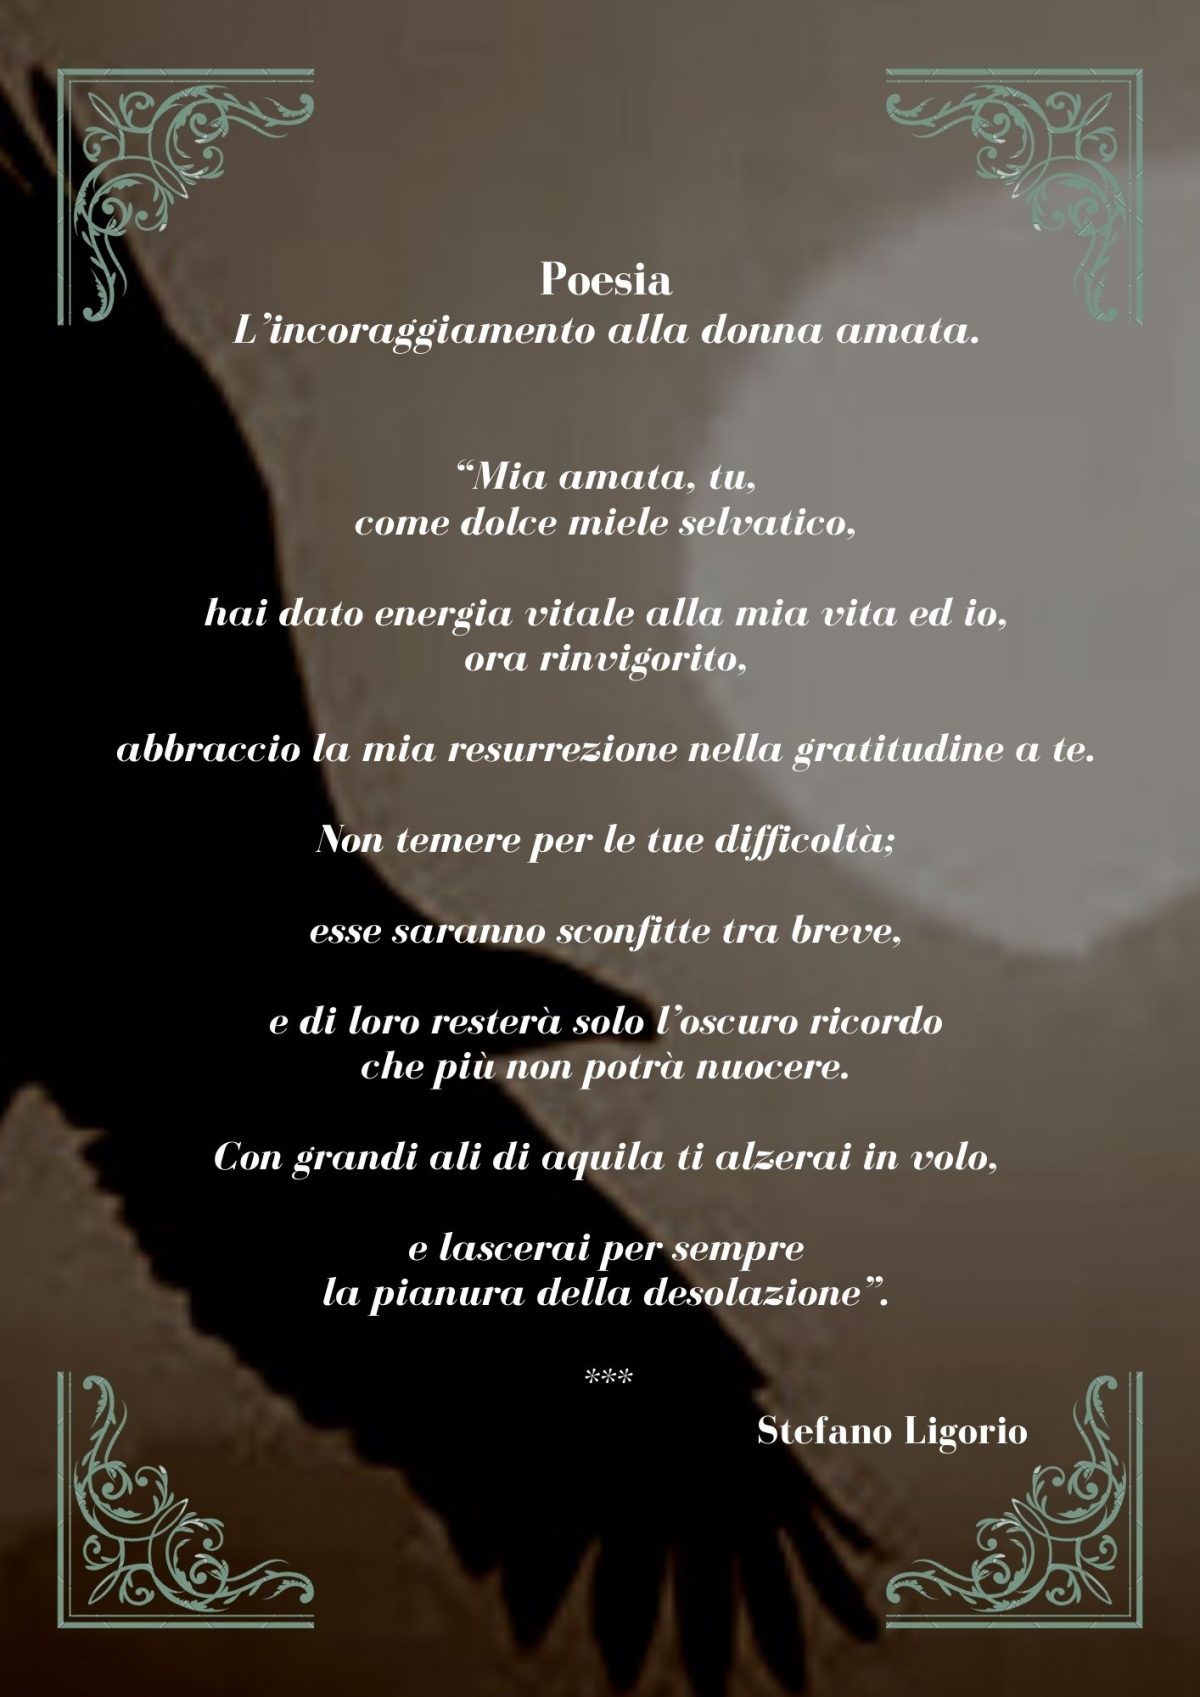 Altre poesie non ‘brevi’ di Stefano Ligorio.